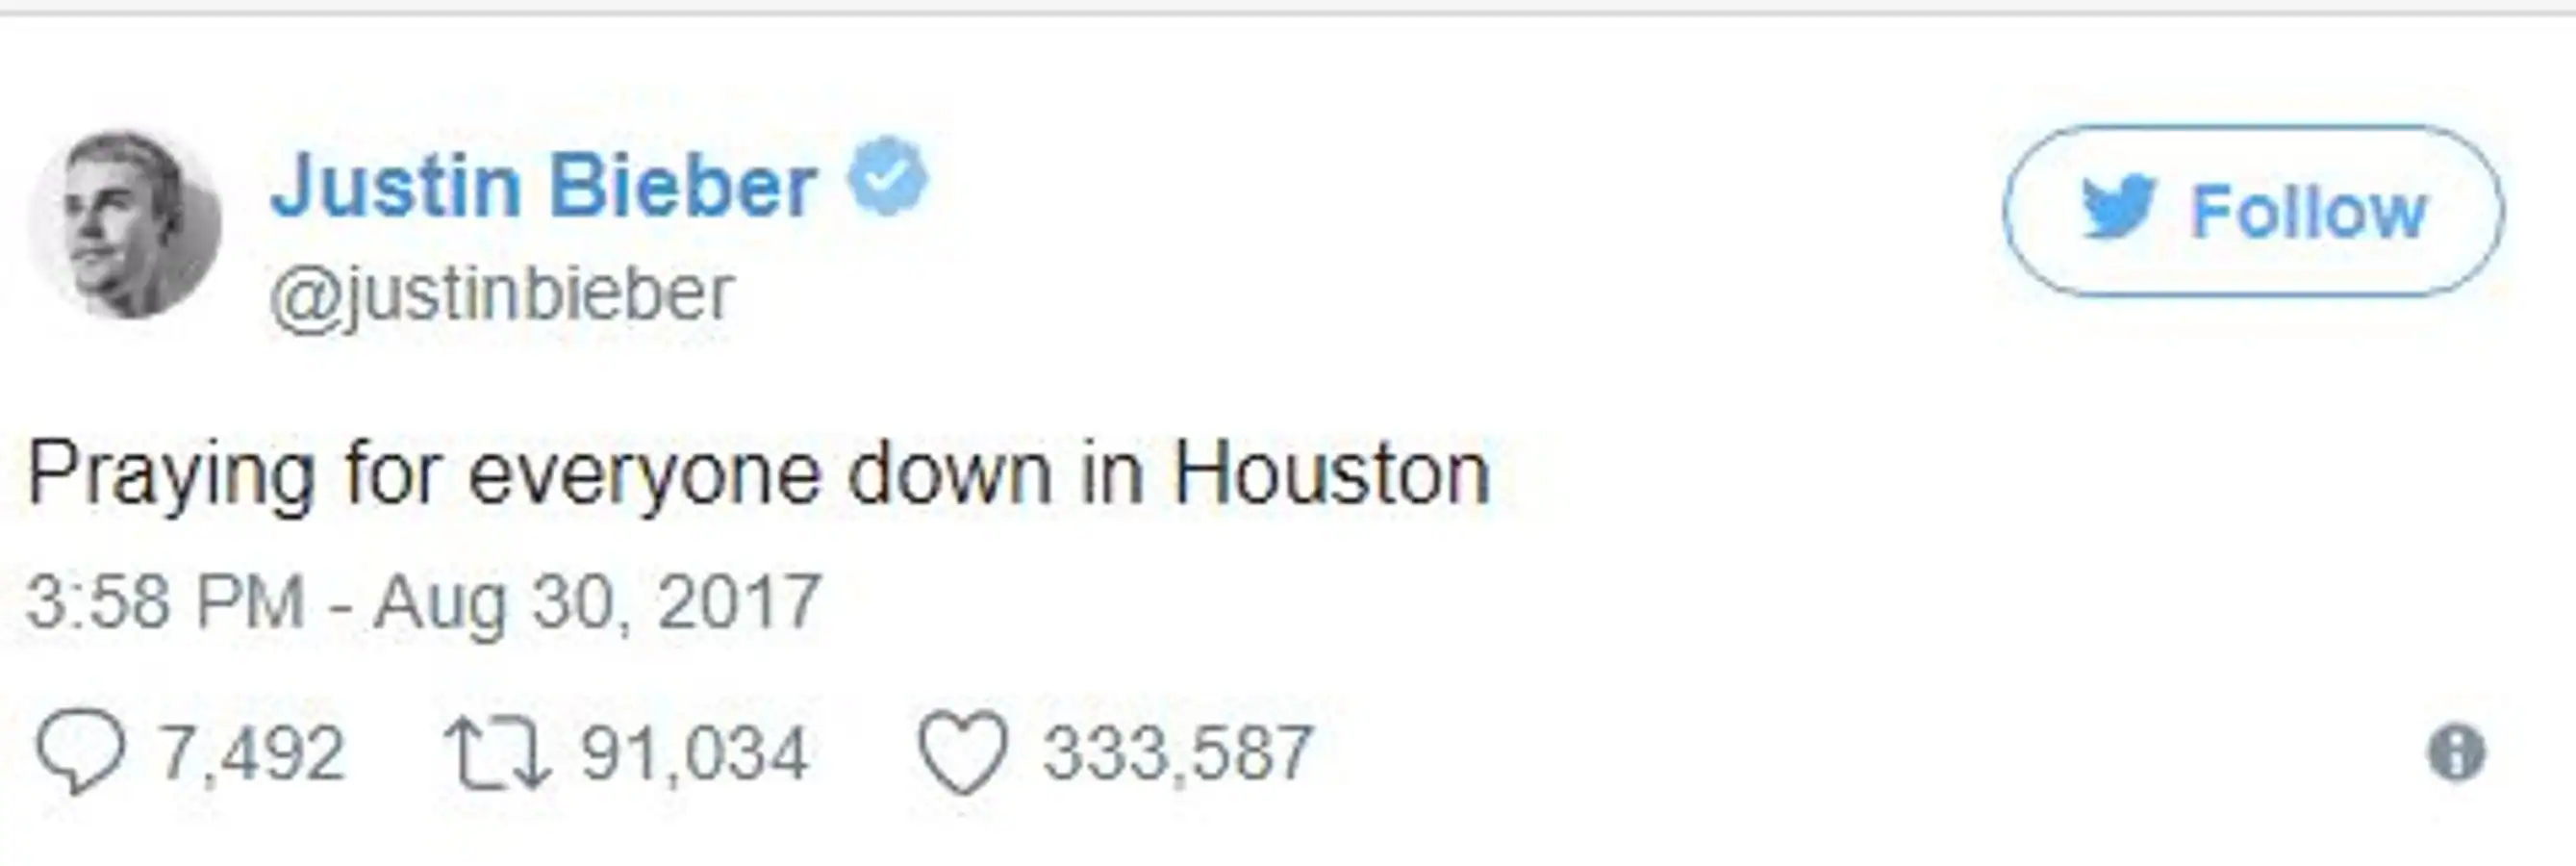 El cantante Jusin Bieber pide oraciones por los afectados por el huracán. 